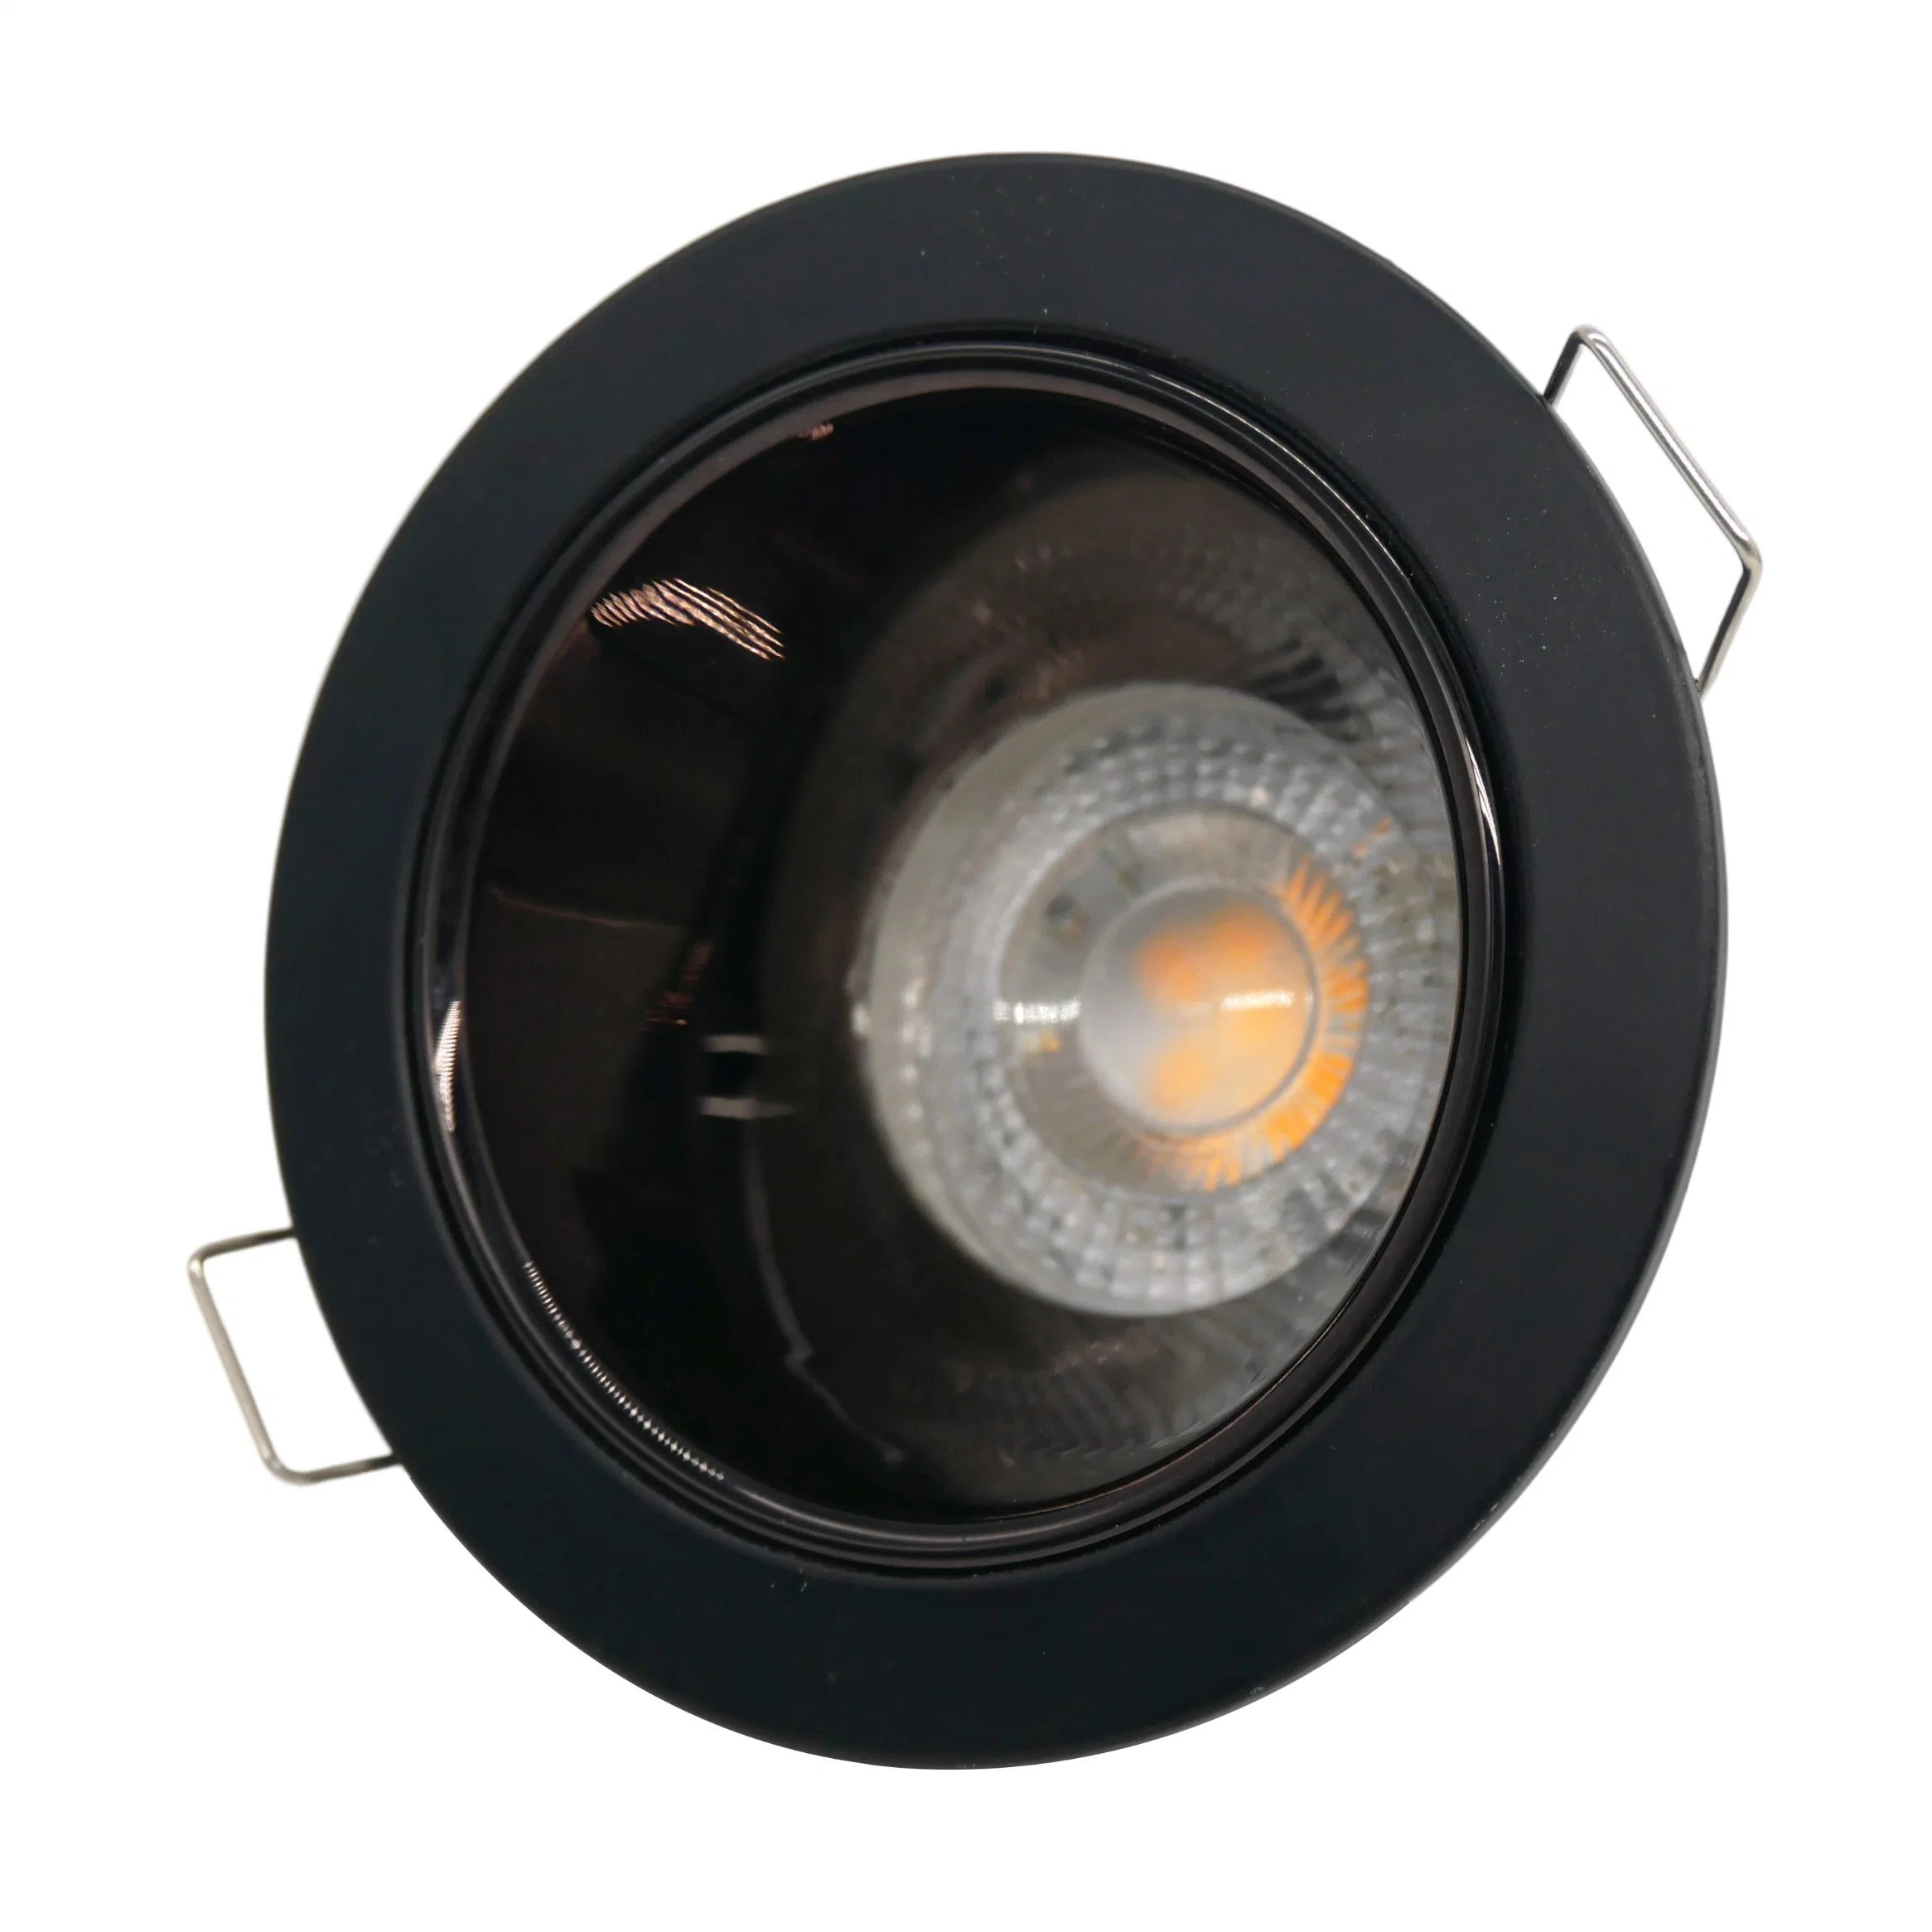 Aluminum MR16 GU10 LED Halogen Round Recessed Ceiling Light Downlight Fixture